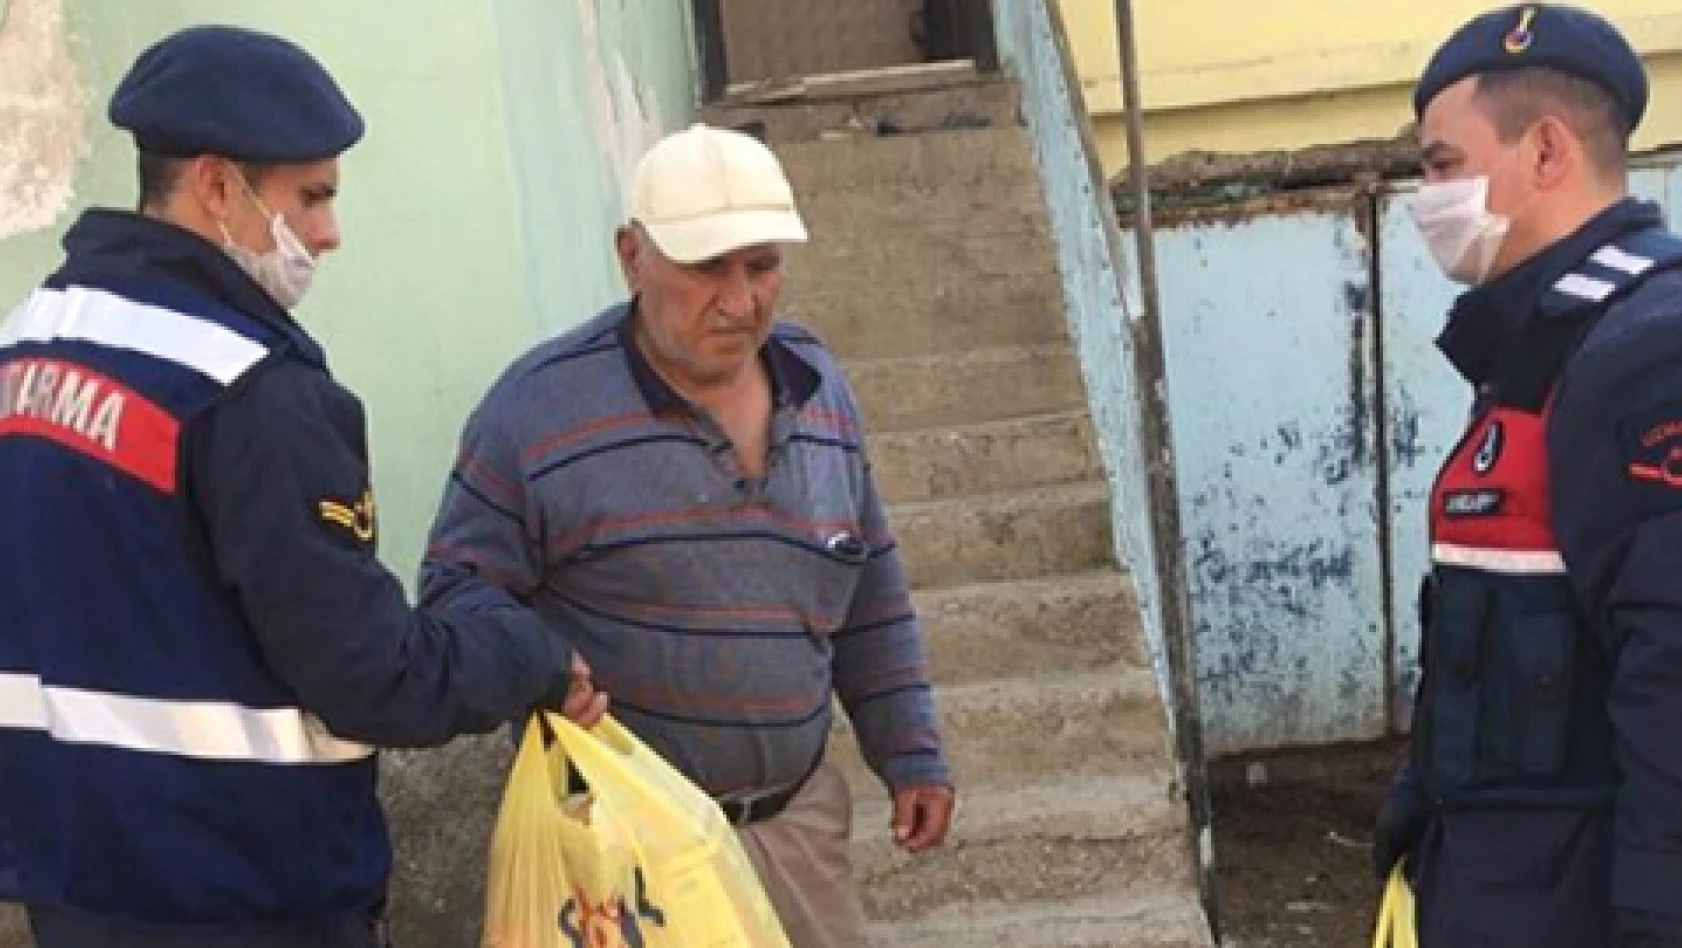 Tomarza'da 65 yaş üstü vatandaşların temel ihtiyaçları karşılanıyor